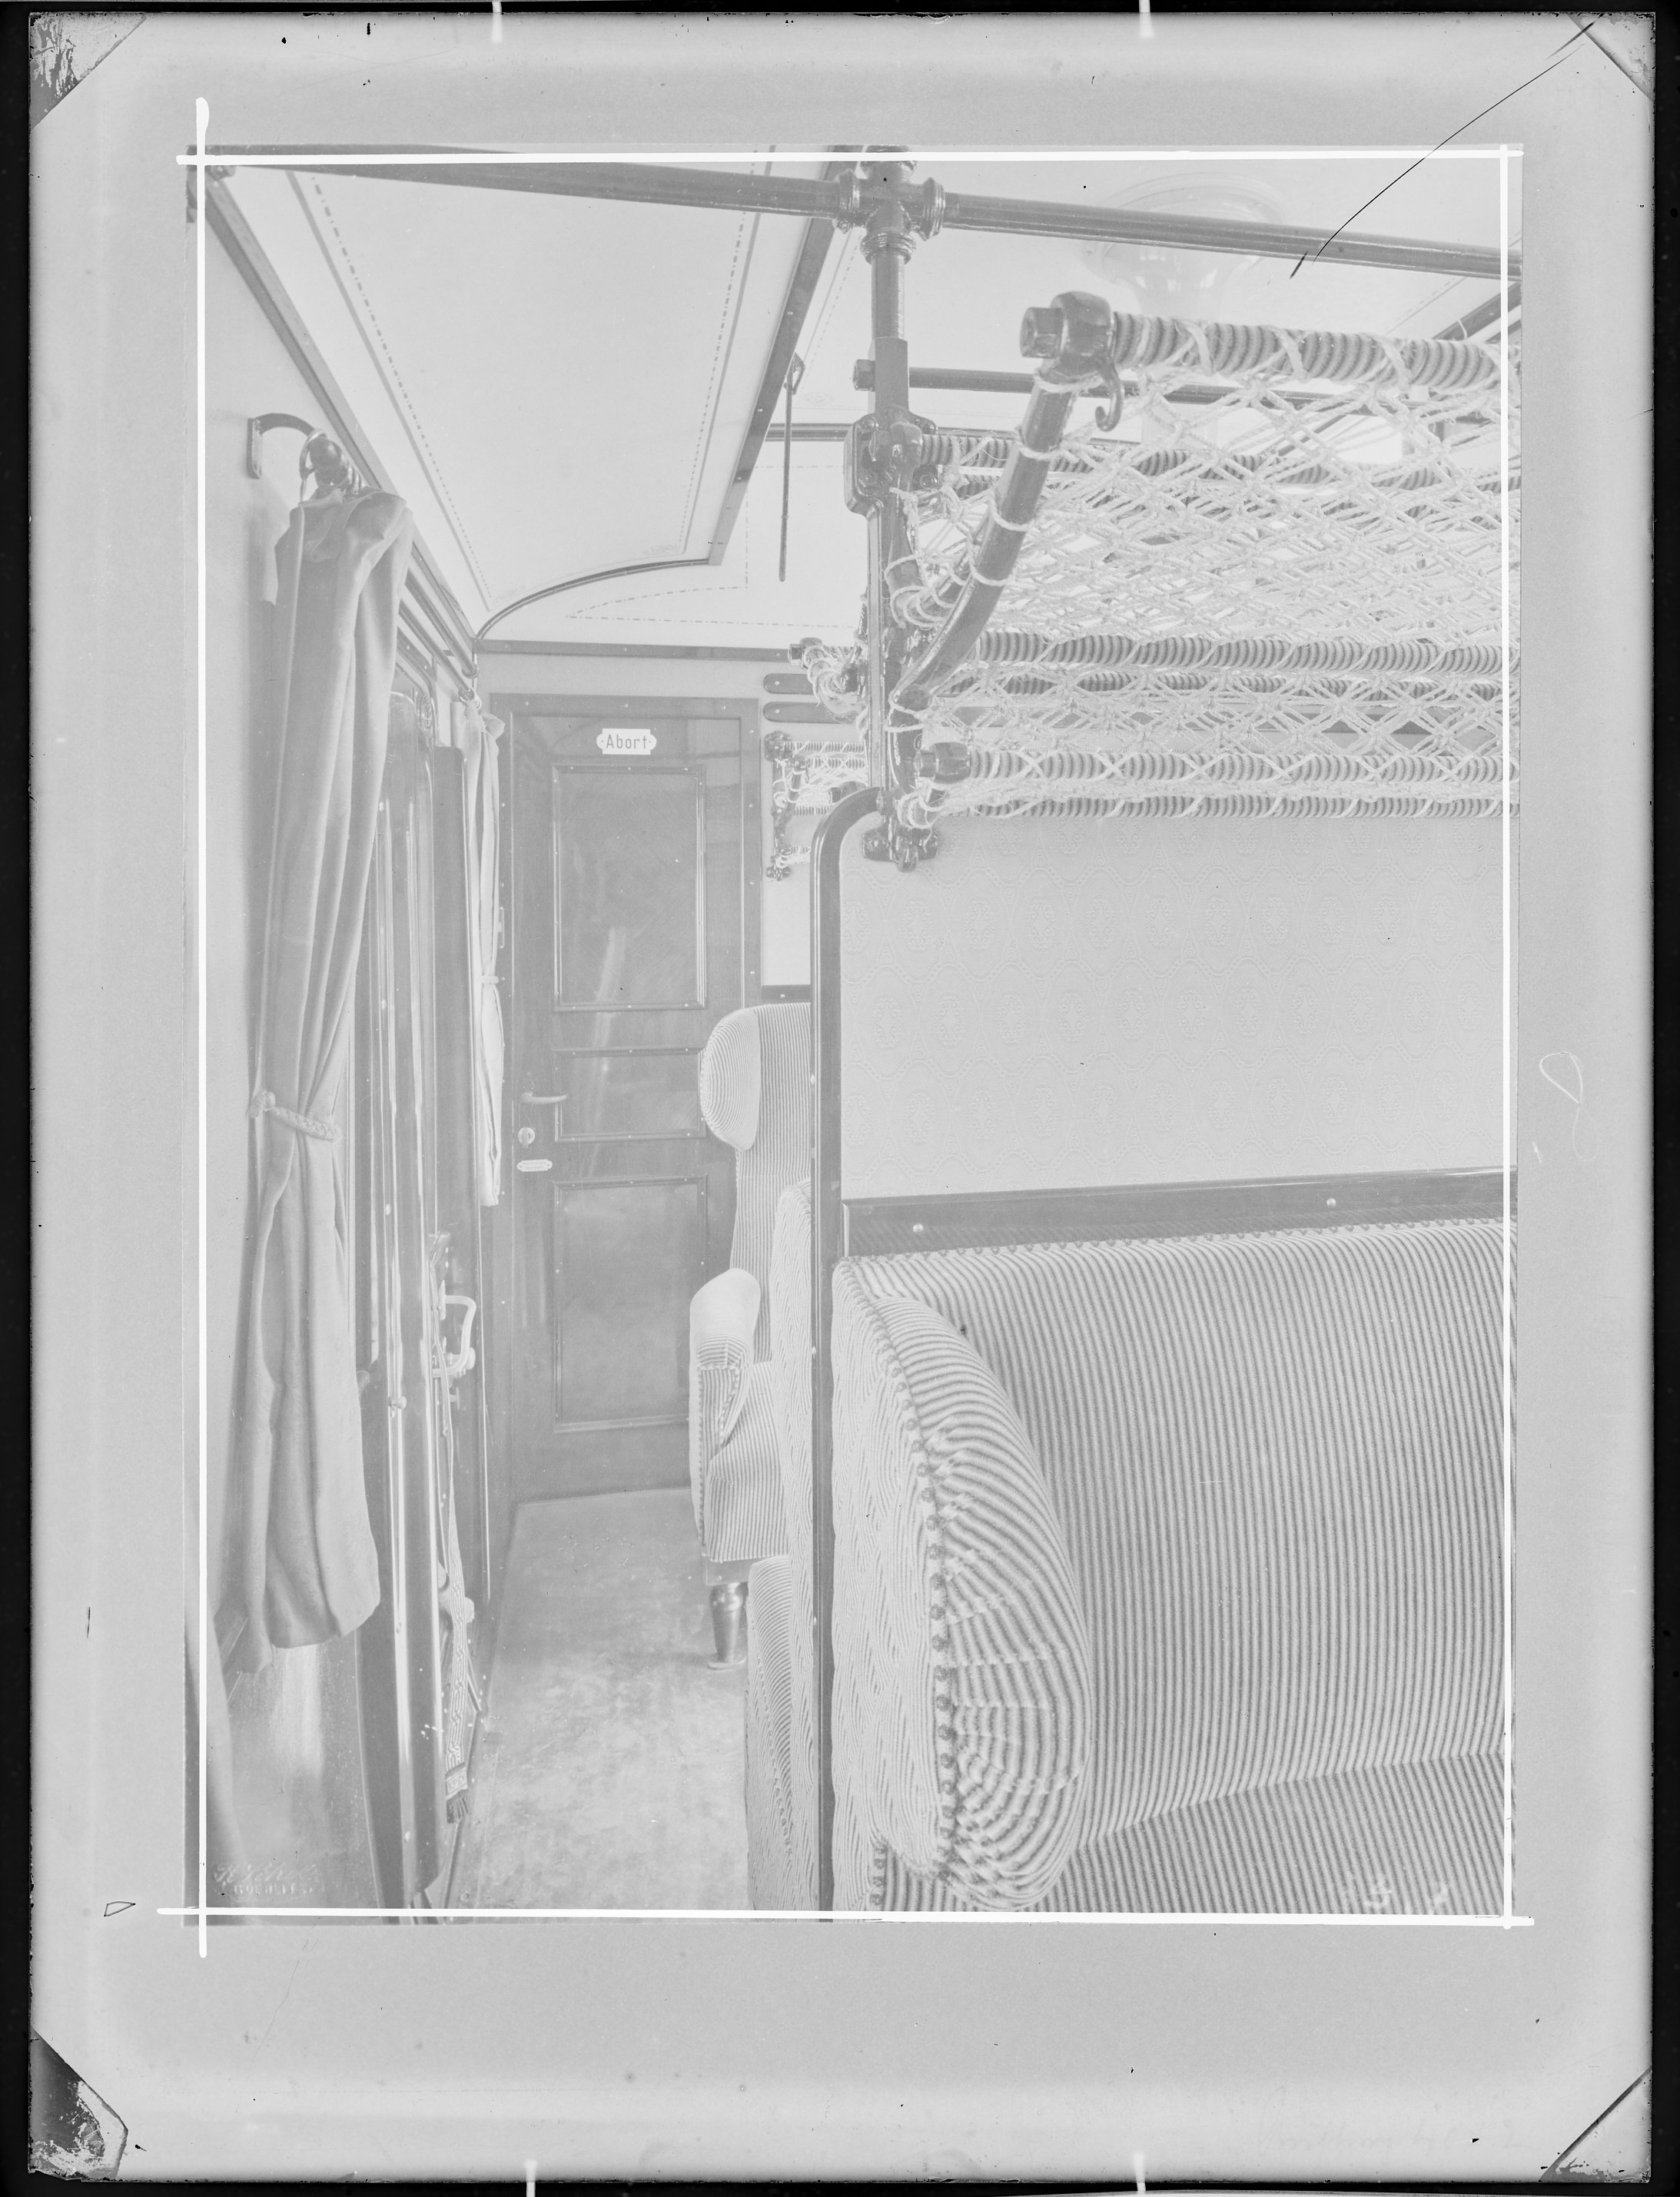 Fotografie: Abteil zweiter Klasse (Innenansicht), Seitengang mit Blick zur Toilettenraum-Tür, um 1902? (Verkehrsmuseum Dresden CC BY-NC-SA)